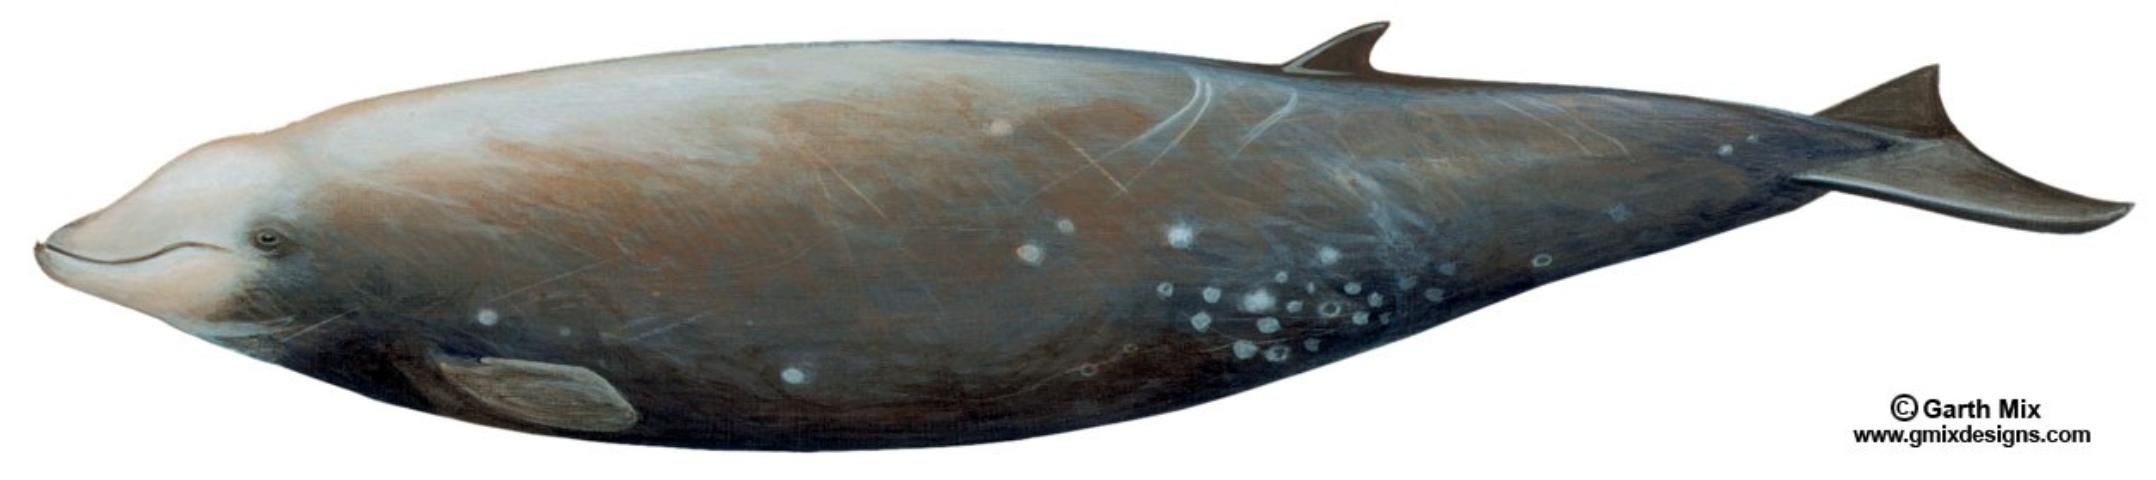 Figure 3. Cuvier's beaked whale Ziphius cavirostris